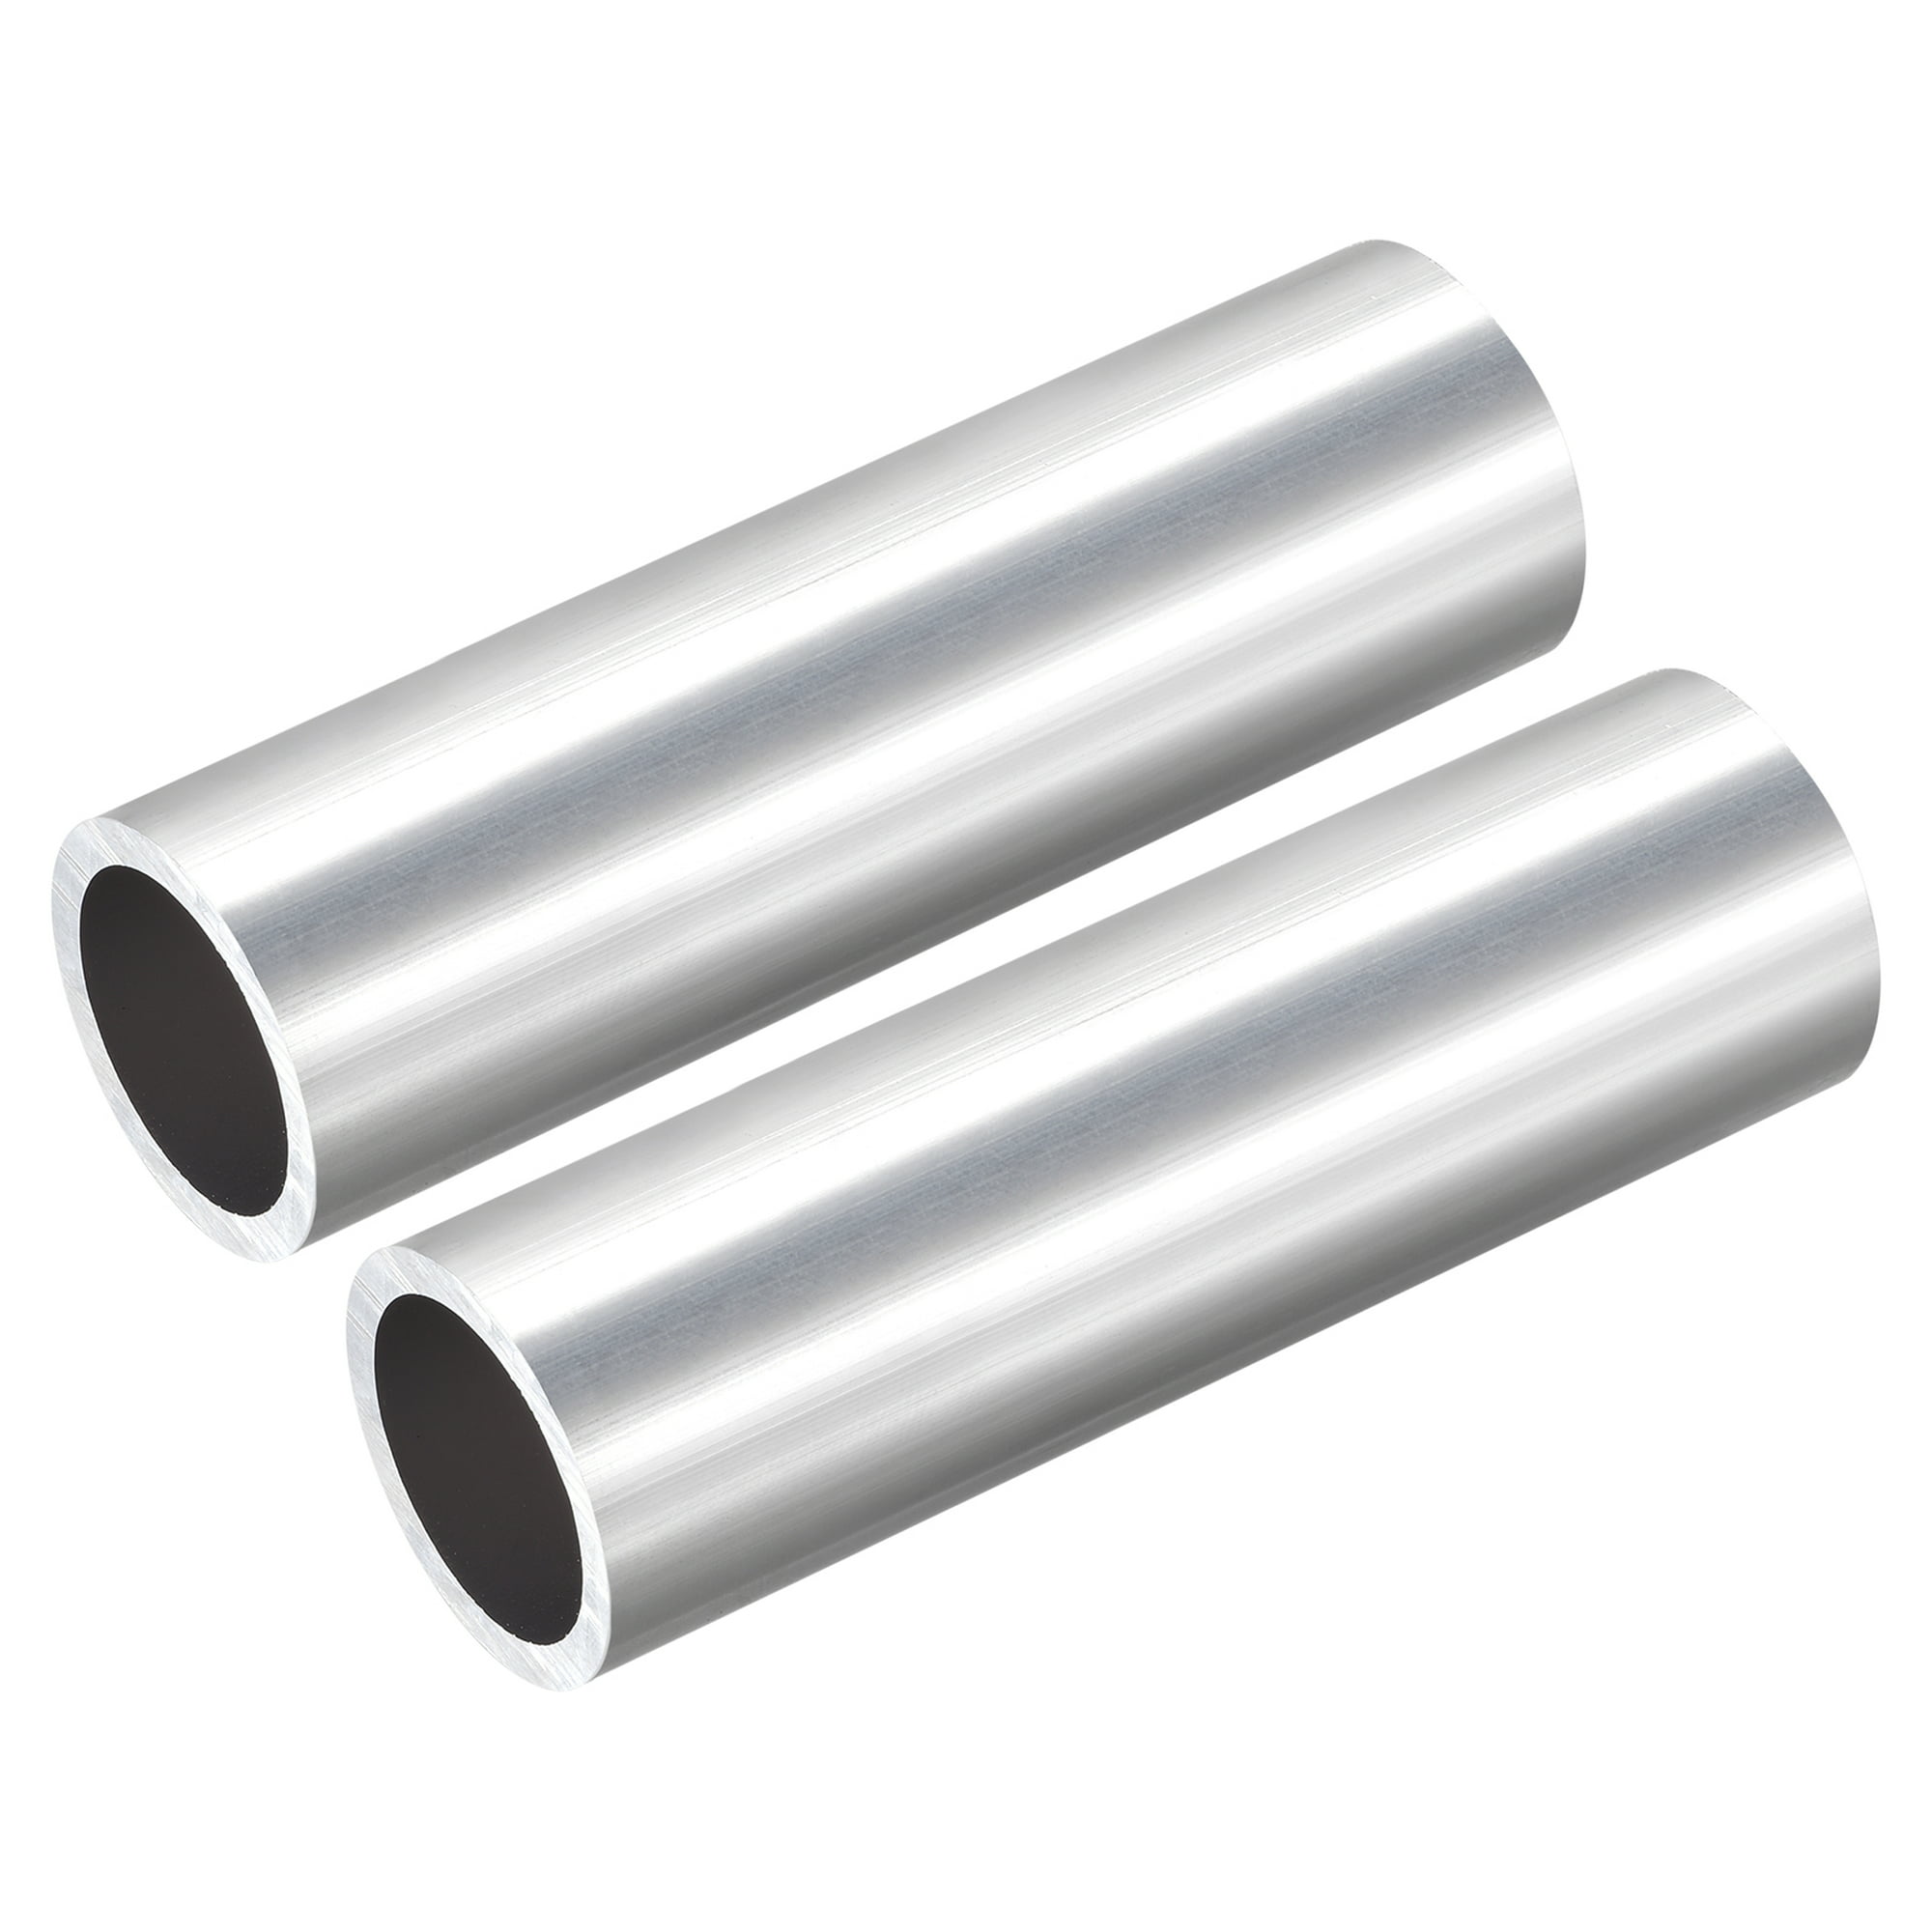 Tubo de aluminio 6063 (1.063 in de diámetro exterior x 0.984 in de diámetro  interior x 11.811 in de largo), 2 piezas, tubo redondo de aluminio - para